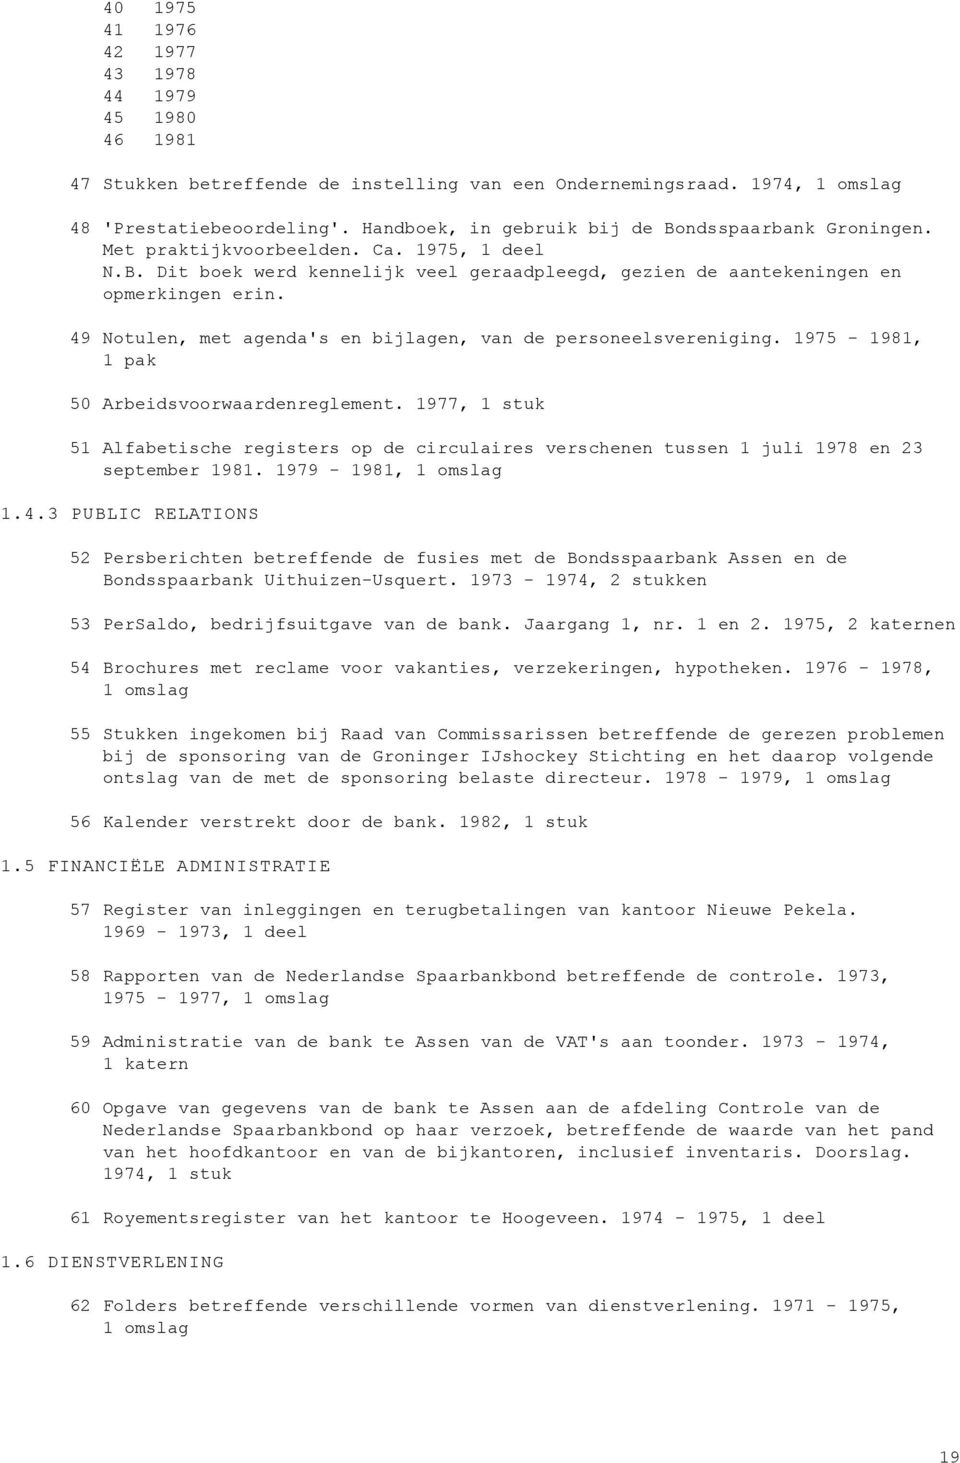 49 Notulen, met agenda's en bijlagen, van de personeelsvereniging. 1975-1981, 1 pak 50 Arbeidsvoorwaardenreglement.